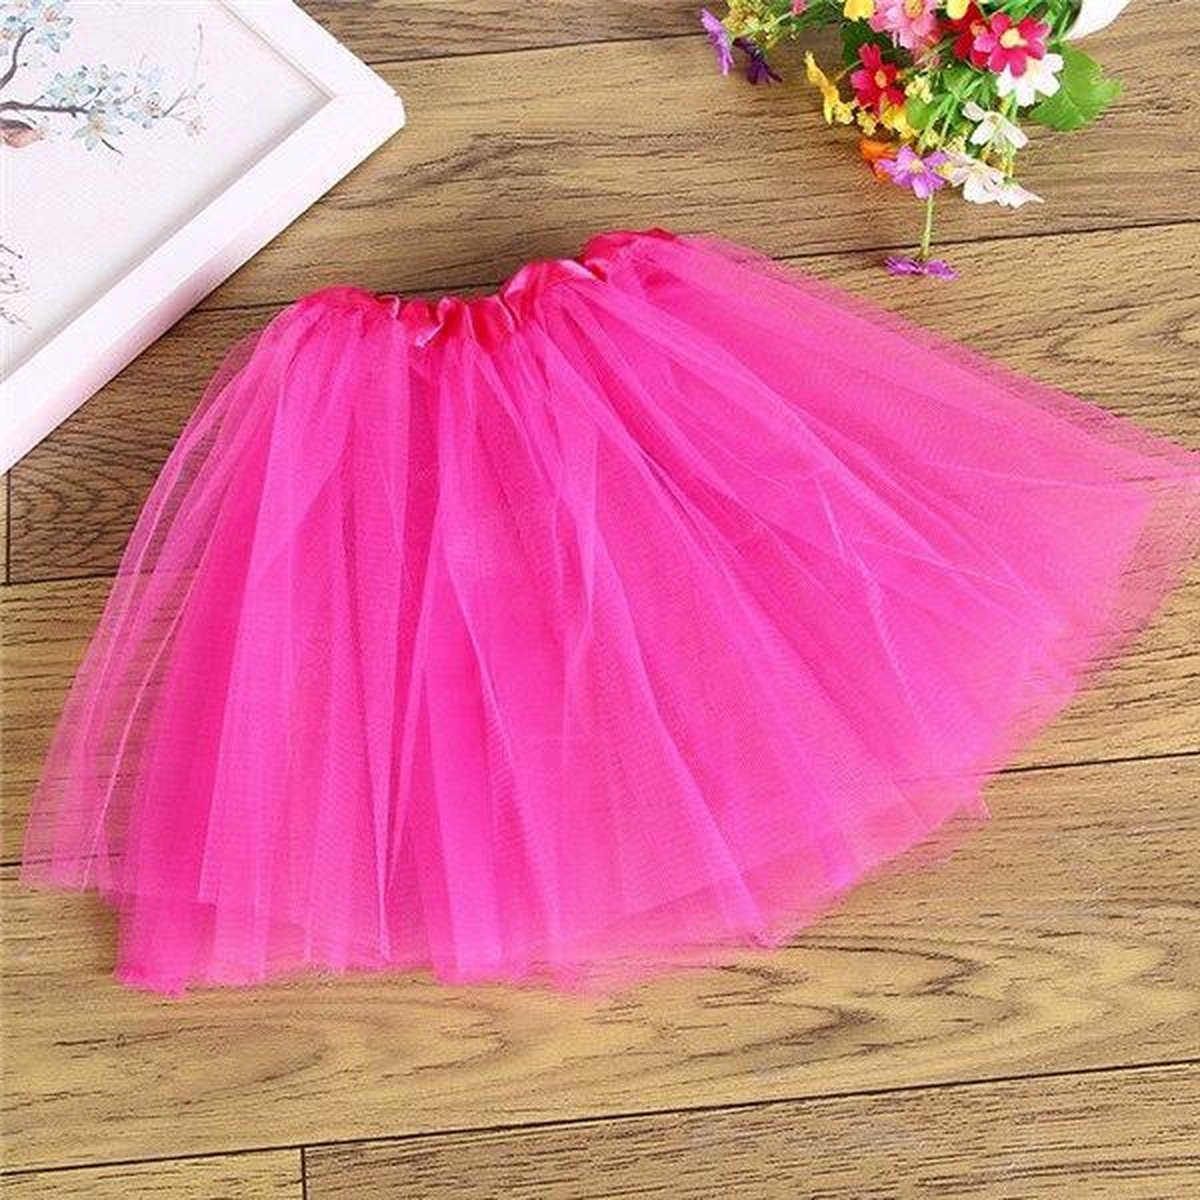 Dunne roze tule rokje petticoat tutu rok - maat 98 104 110 116 - eenhoorn onderrok ballet turnen